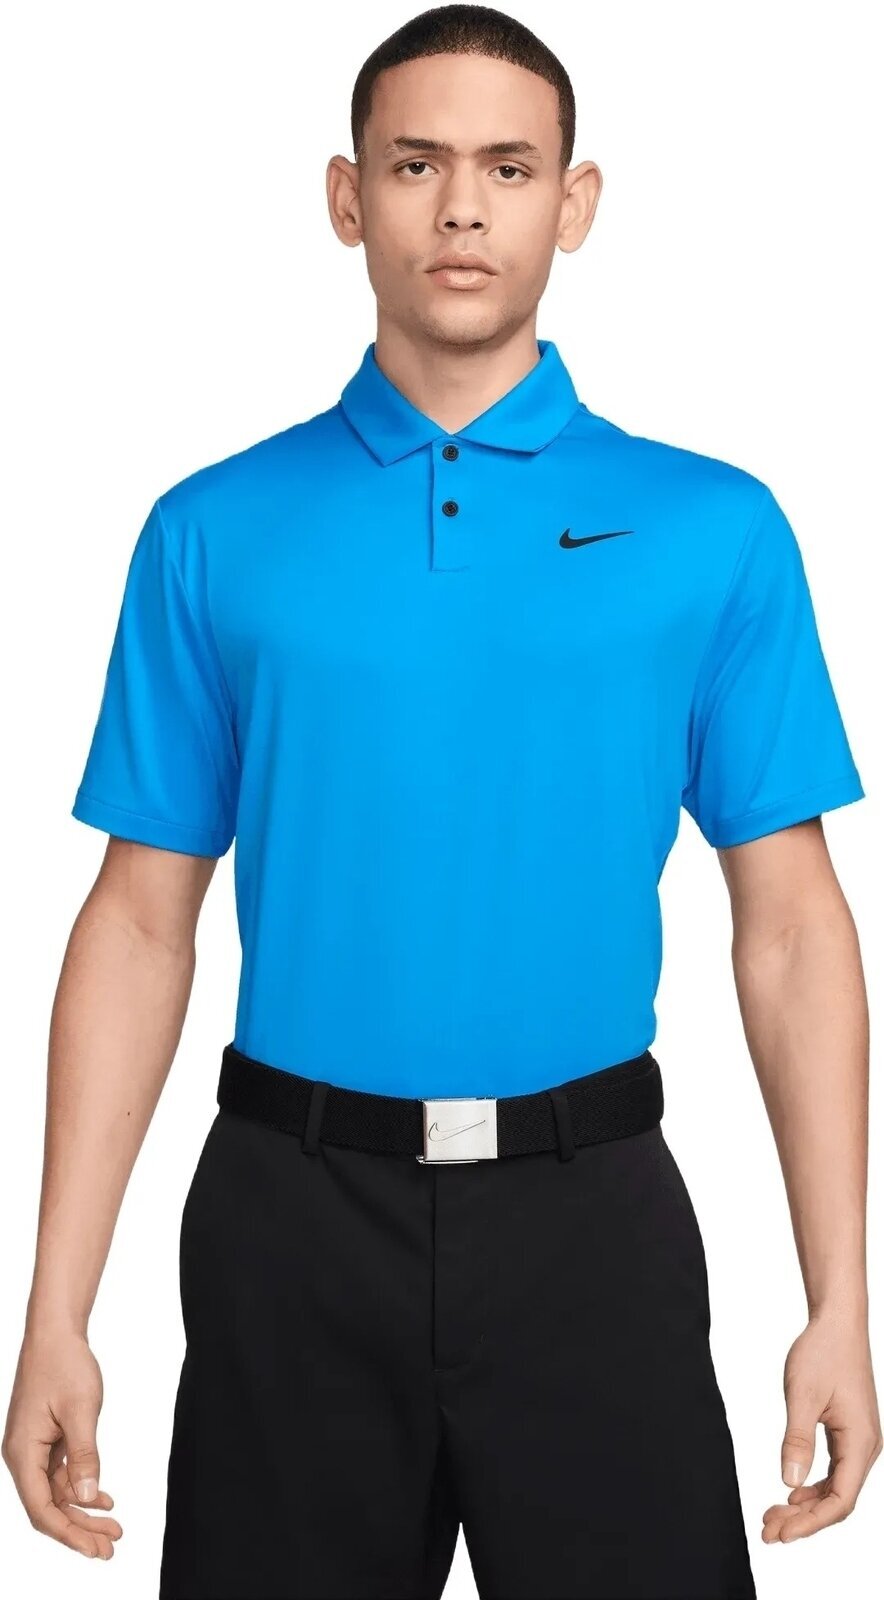 Poloshirt Nike Dri-Fit Tour Solid Mens Polo Light Photo Blue/Black M